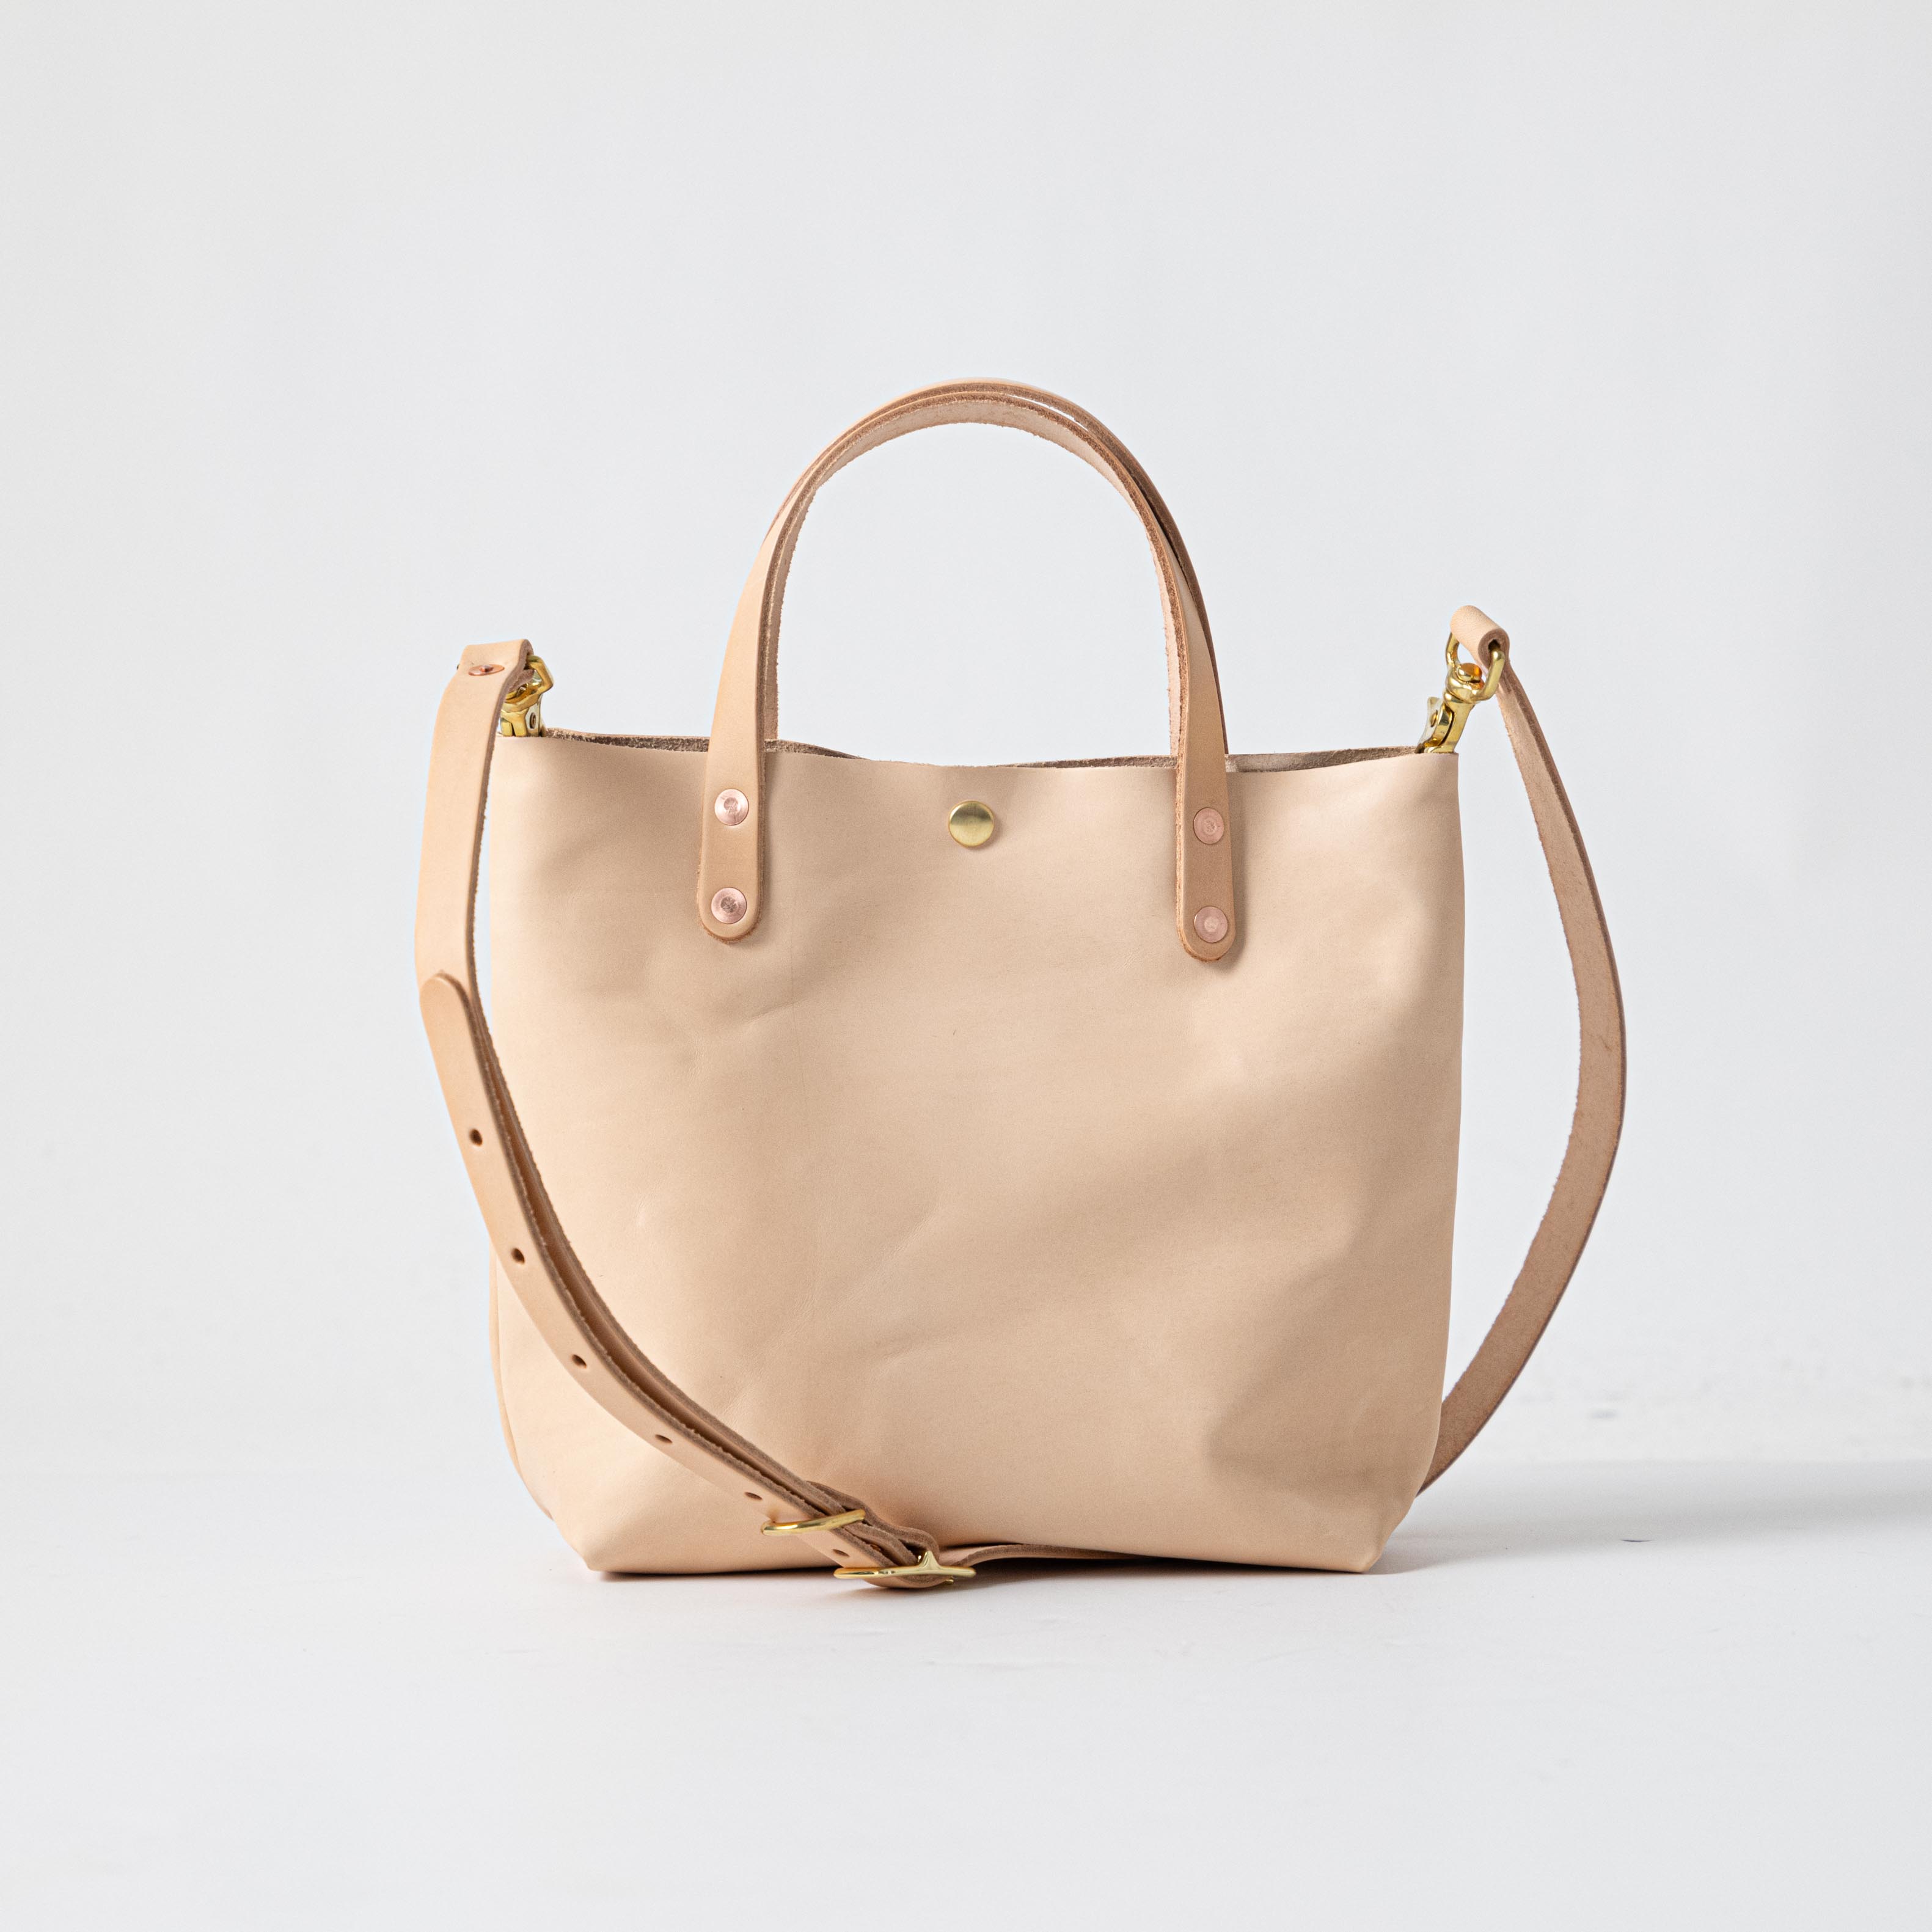 Original Coloré Handbag in Vegetable Tanned Leather